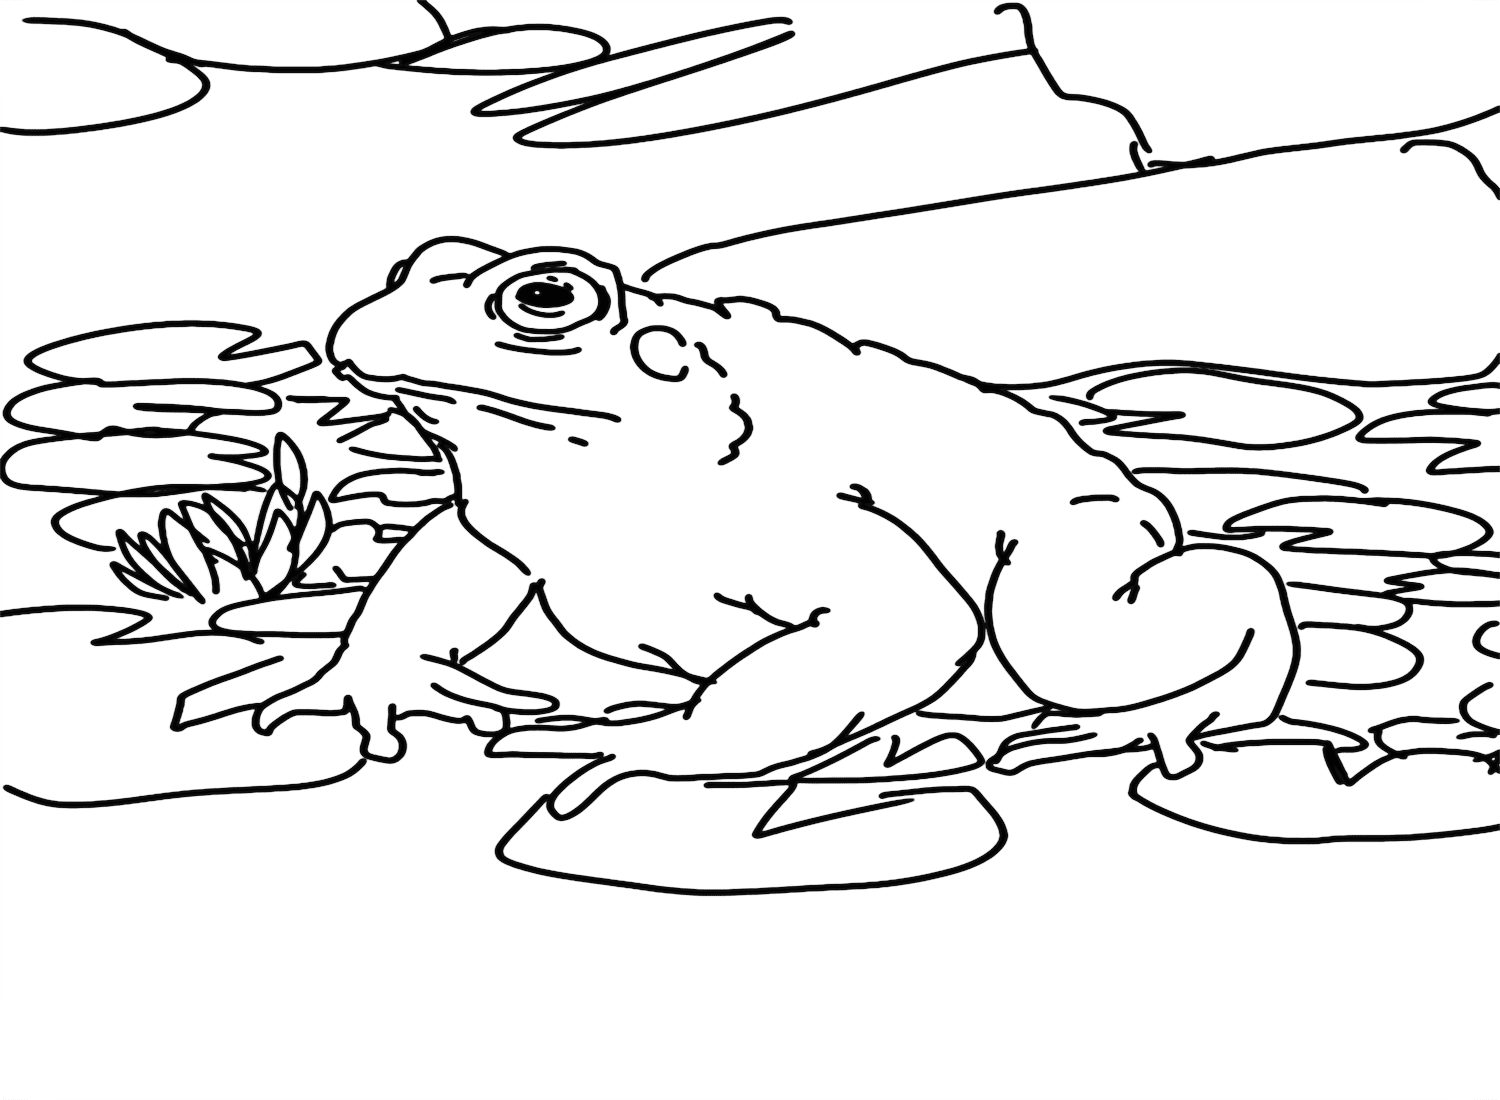 Cane Toad Malvorlage PDF von Cane Toad